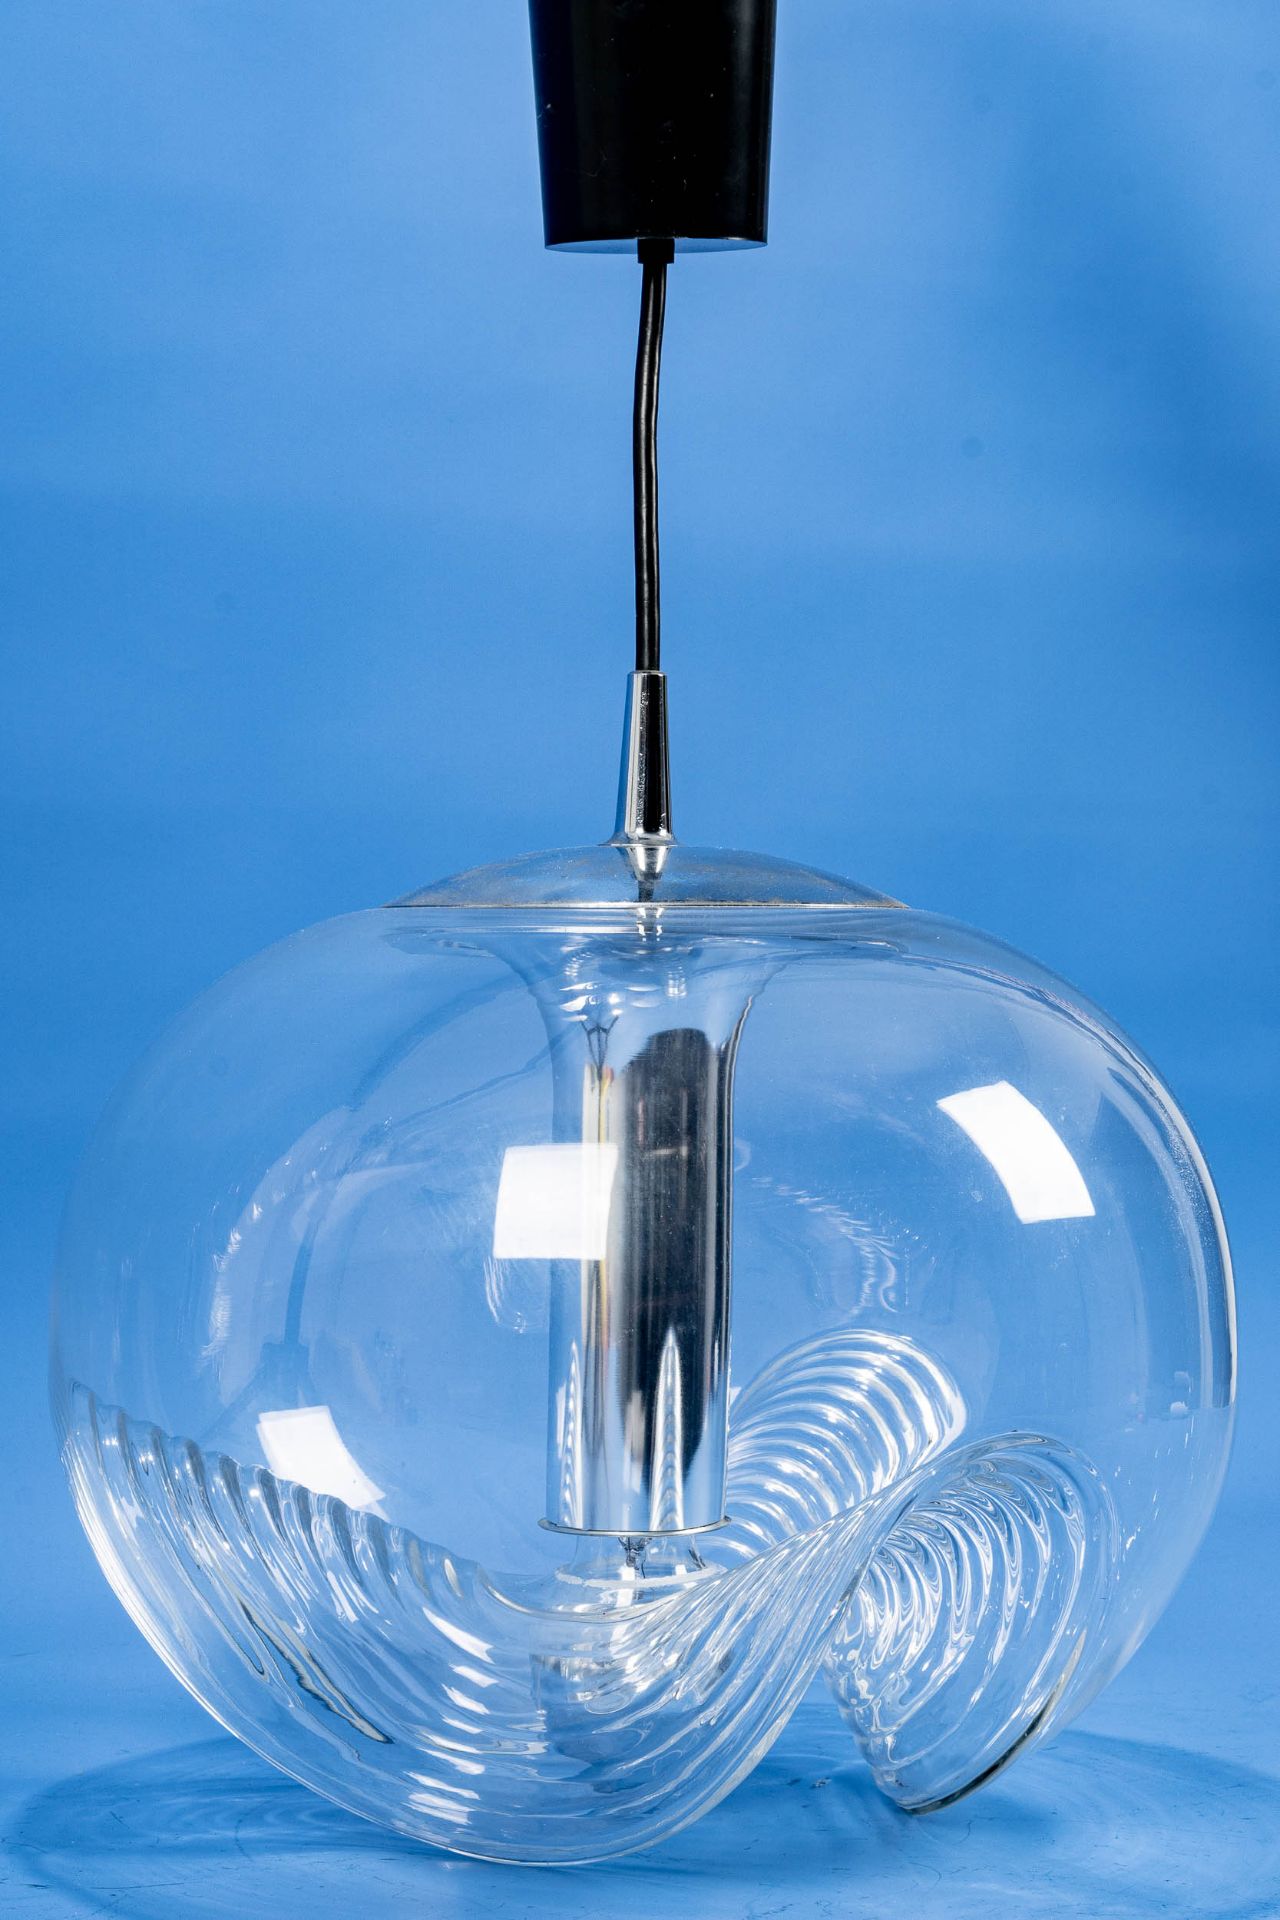 Kultige SPACE-AGE Deckenlampe der 1960er/70er Jahre, einflammig elektrifizierter Glaskorpus, Durchm - Bild 6 aus 10